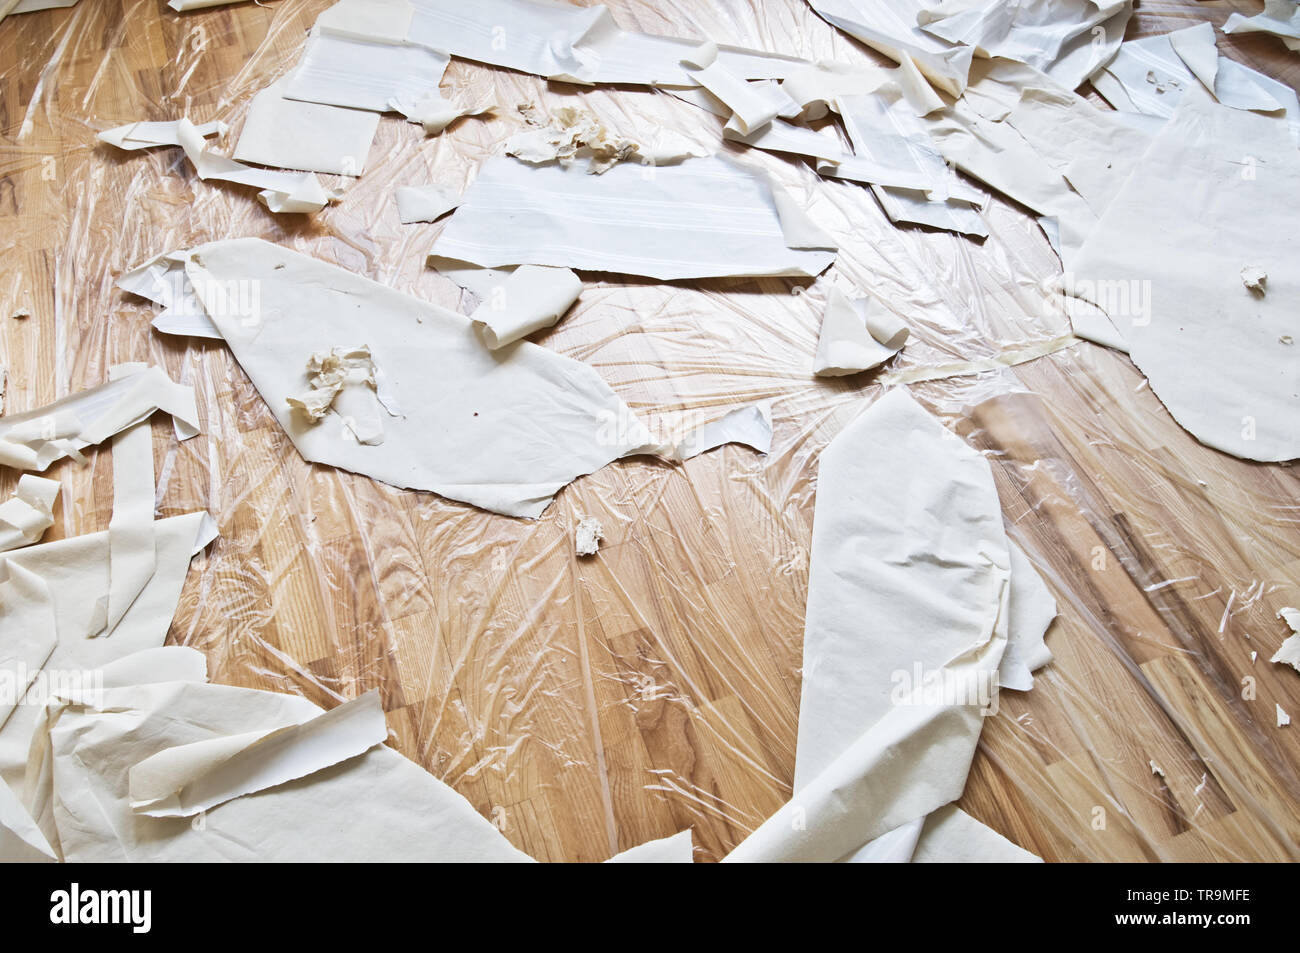 Renovación interior. Suelo de parquet bajo la protección de plástico, papel y retazos de papel tapiz. Foto de stock